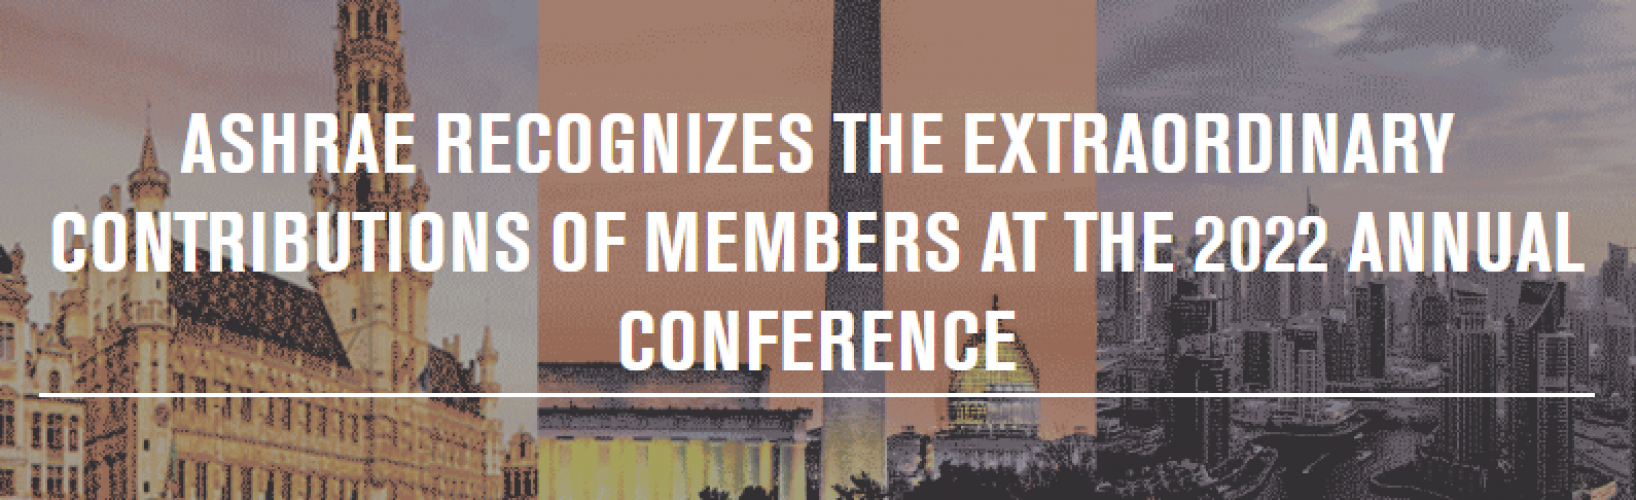 ASHRAE reconoce las contribuciones extraordinarias de miembros en la Conferencia Anual de 2022